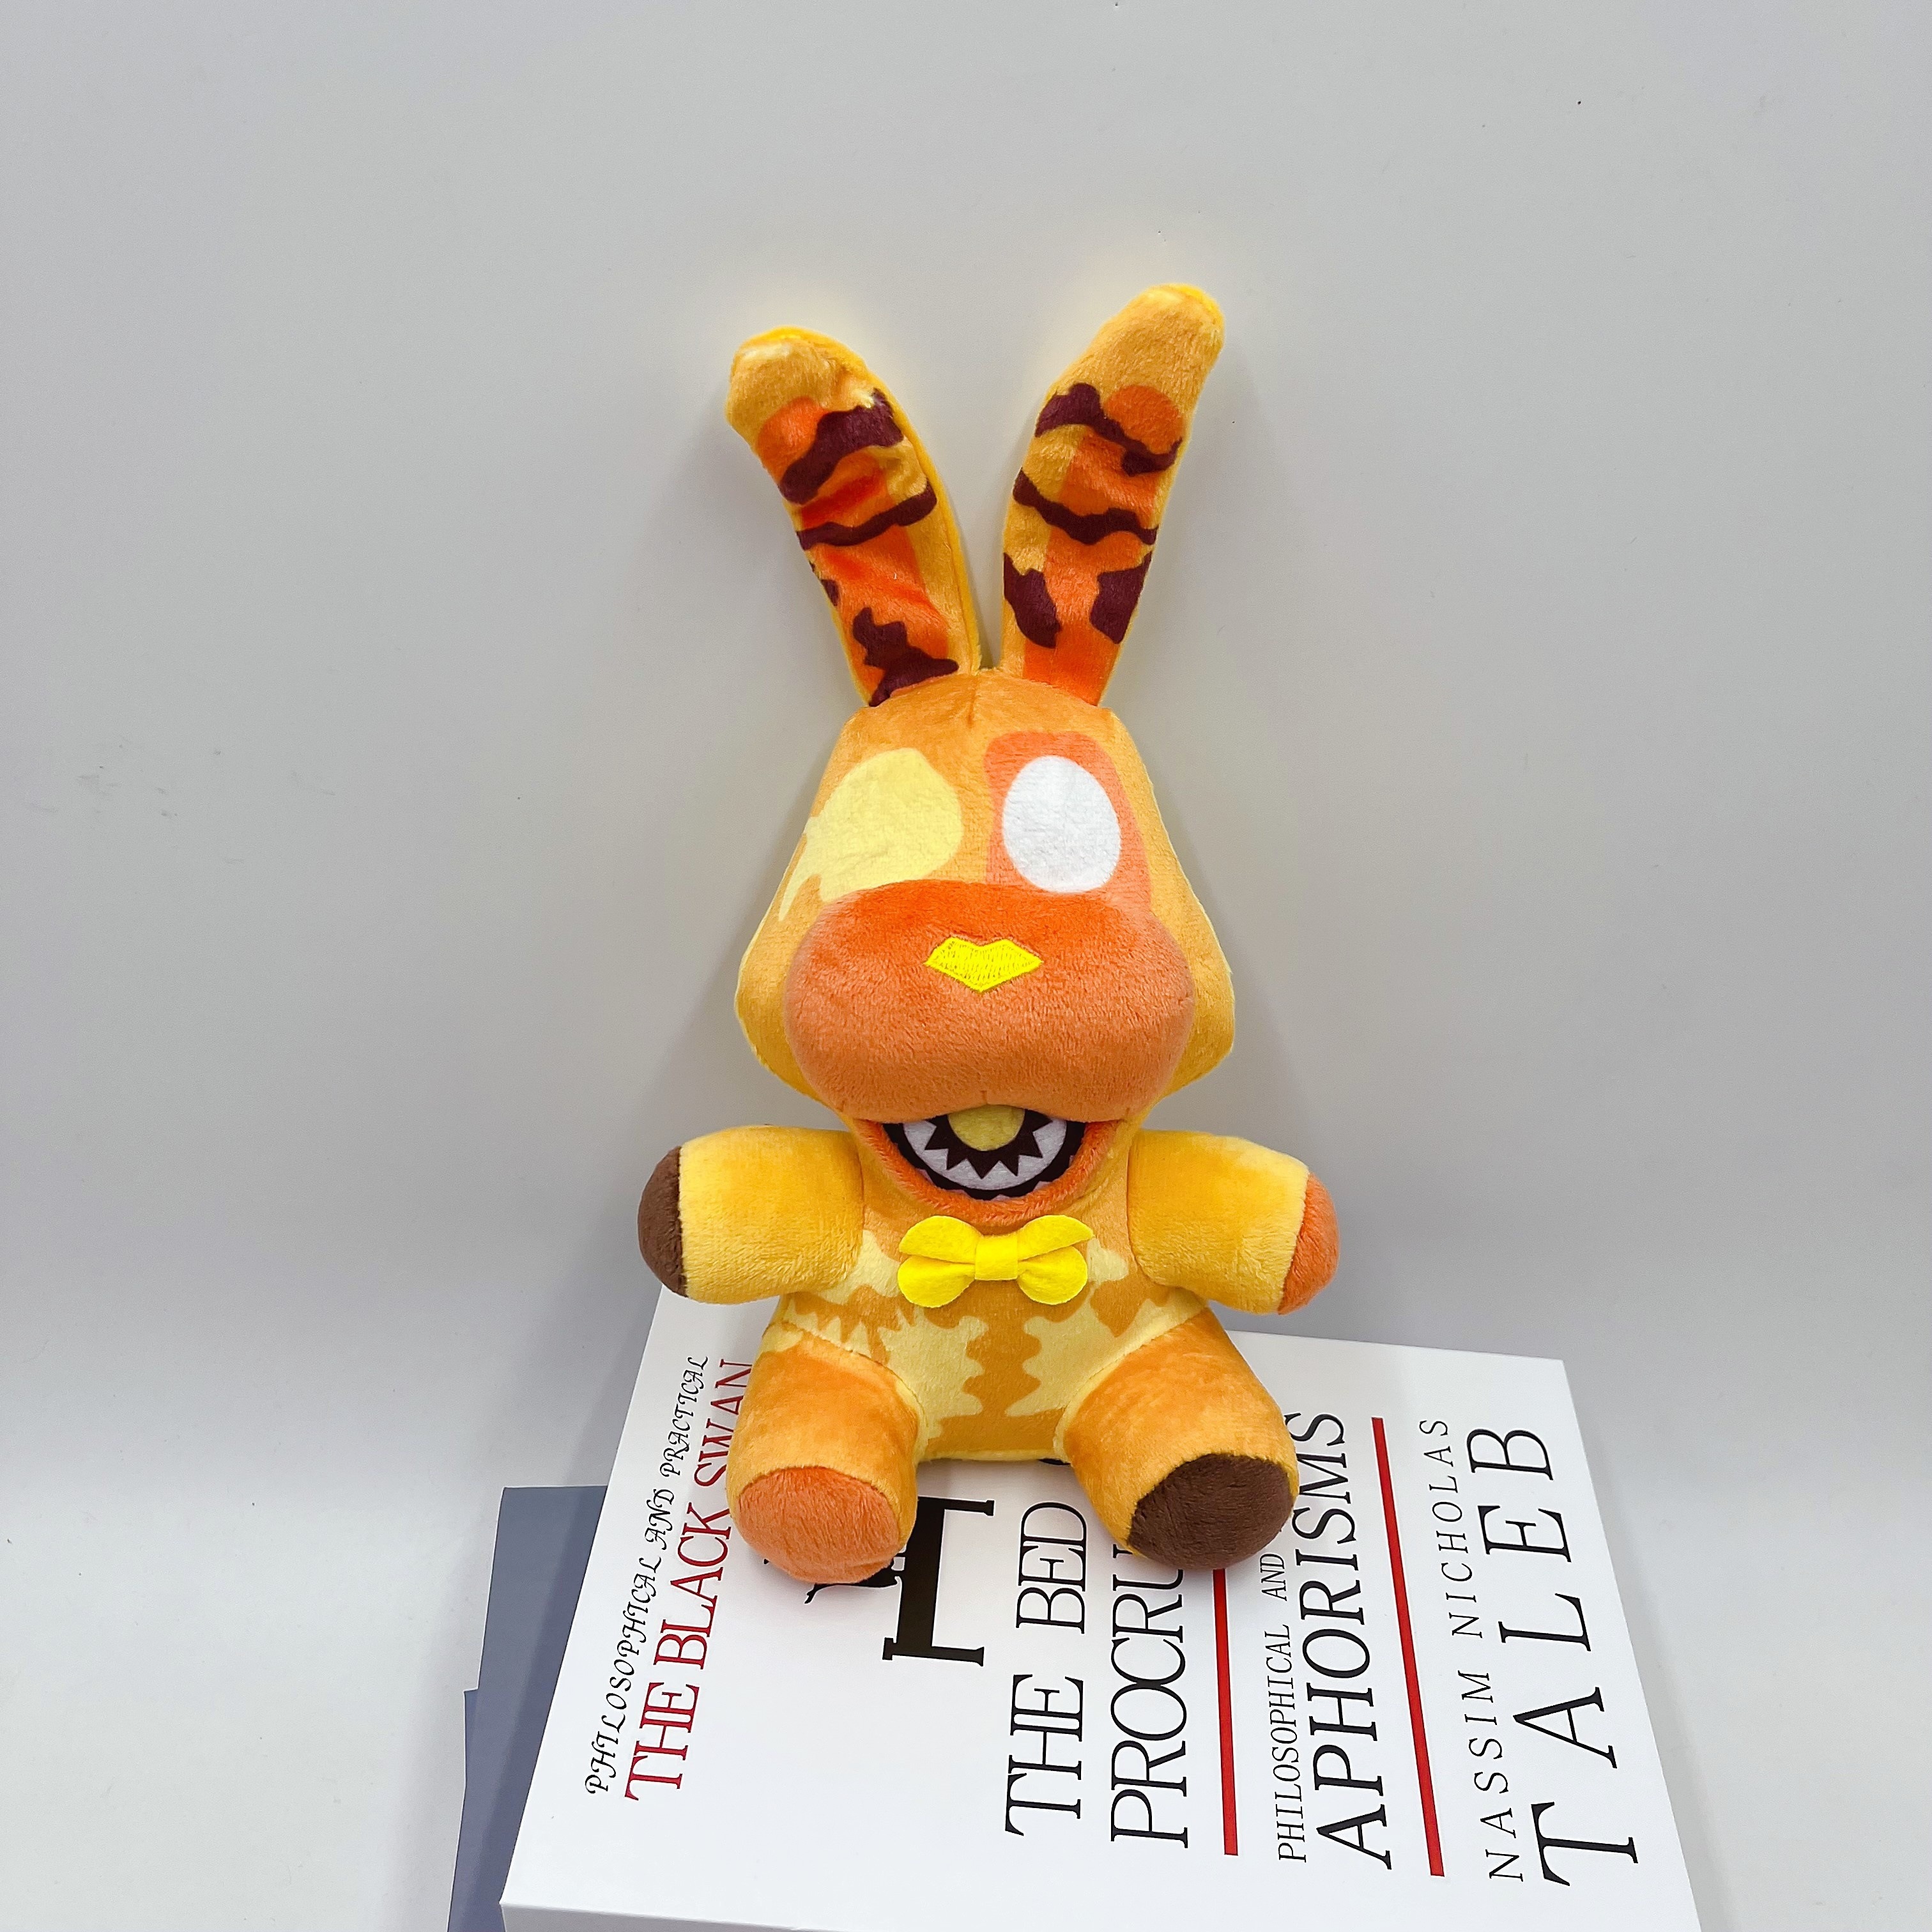 Spring Bonnie Plush Toys Doll FNAF Plushies Stuffed Animal for Yellow  Bonnie 8